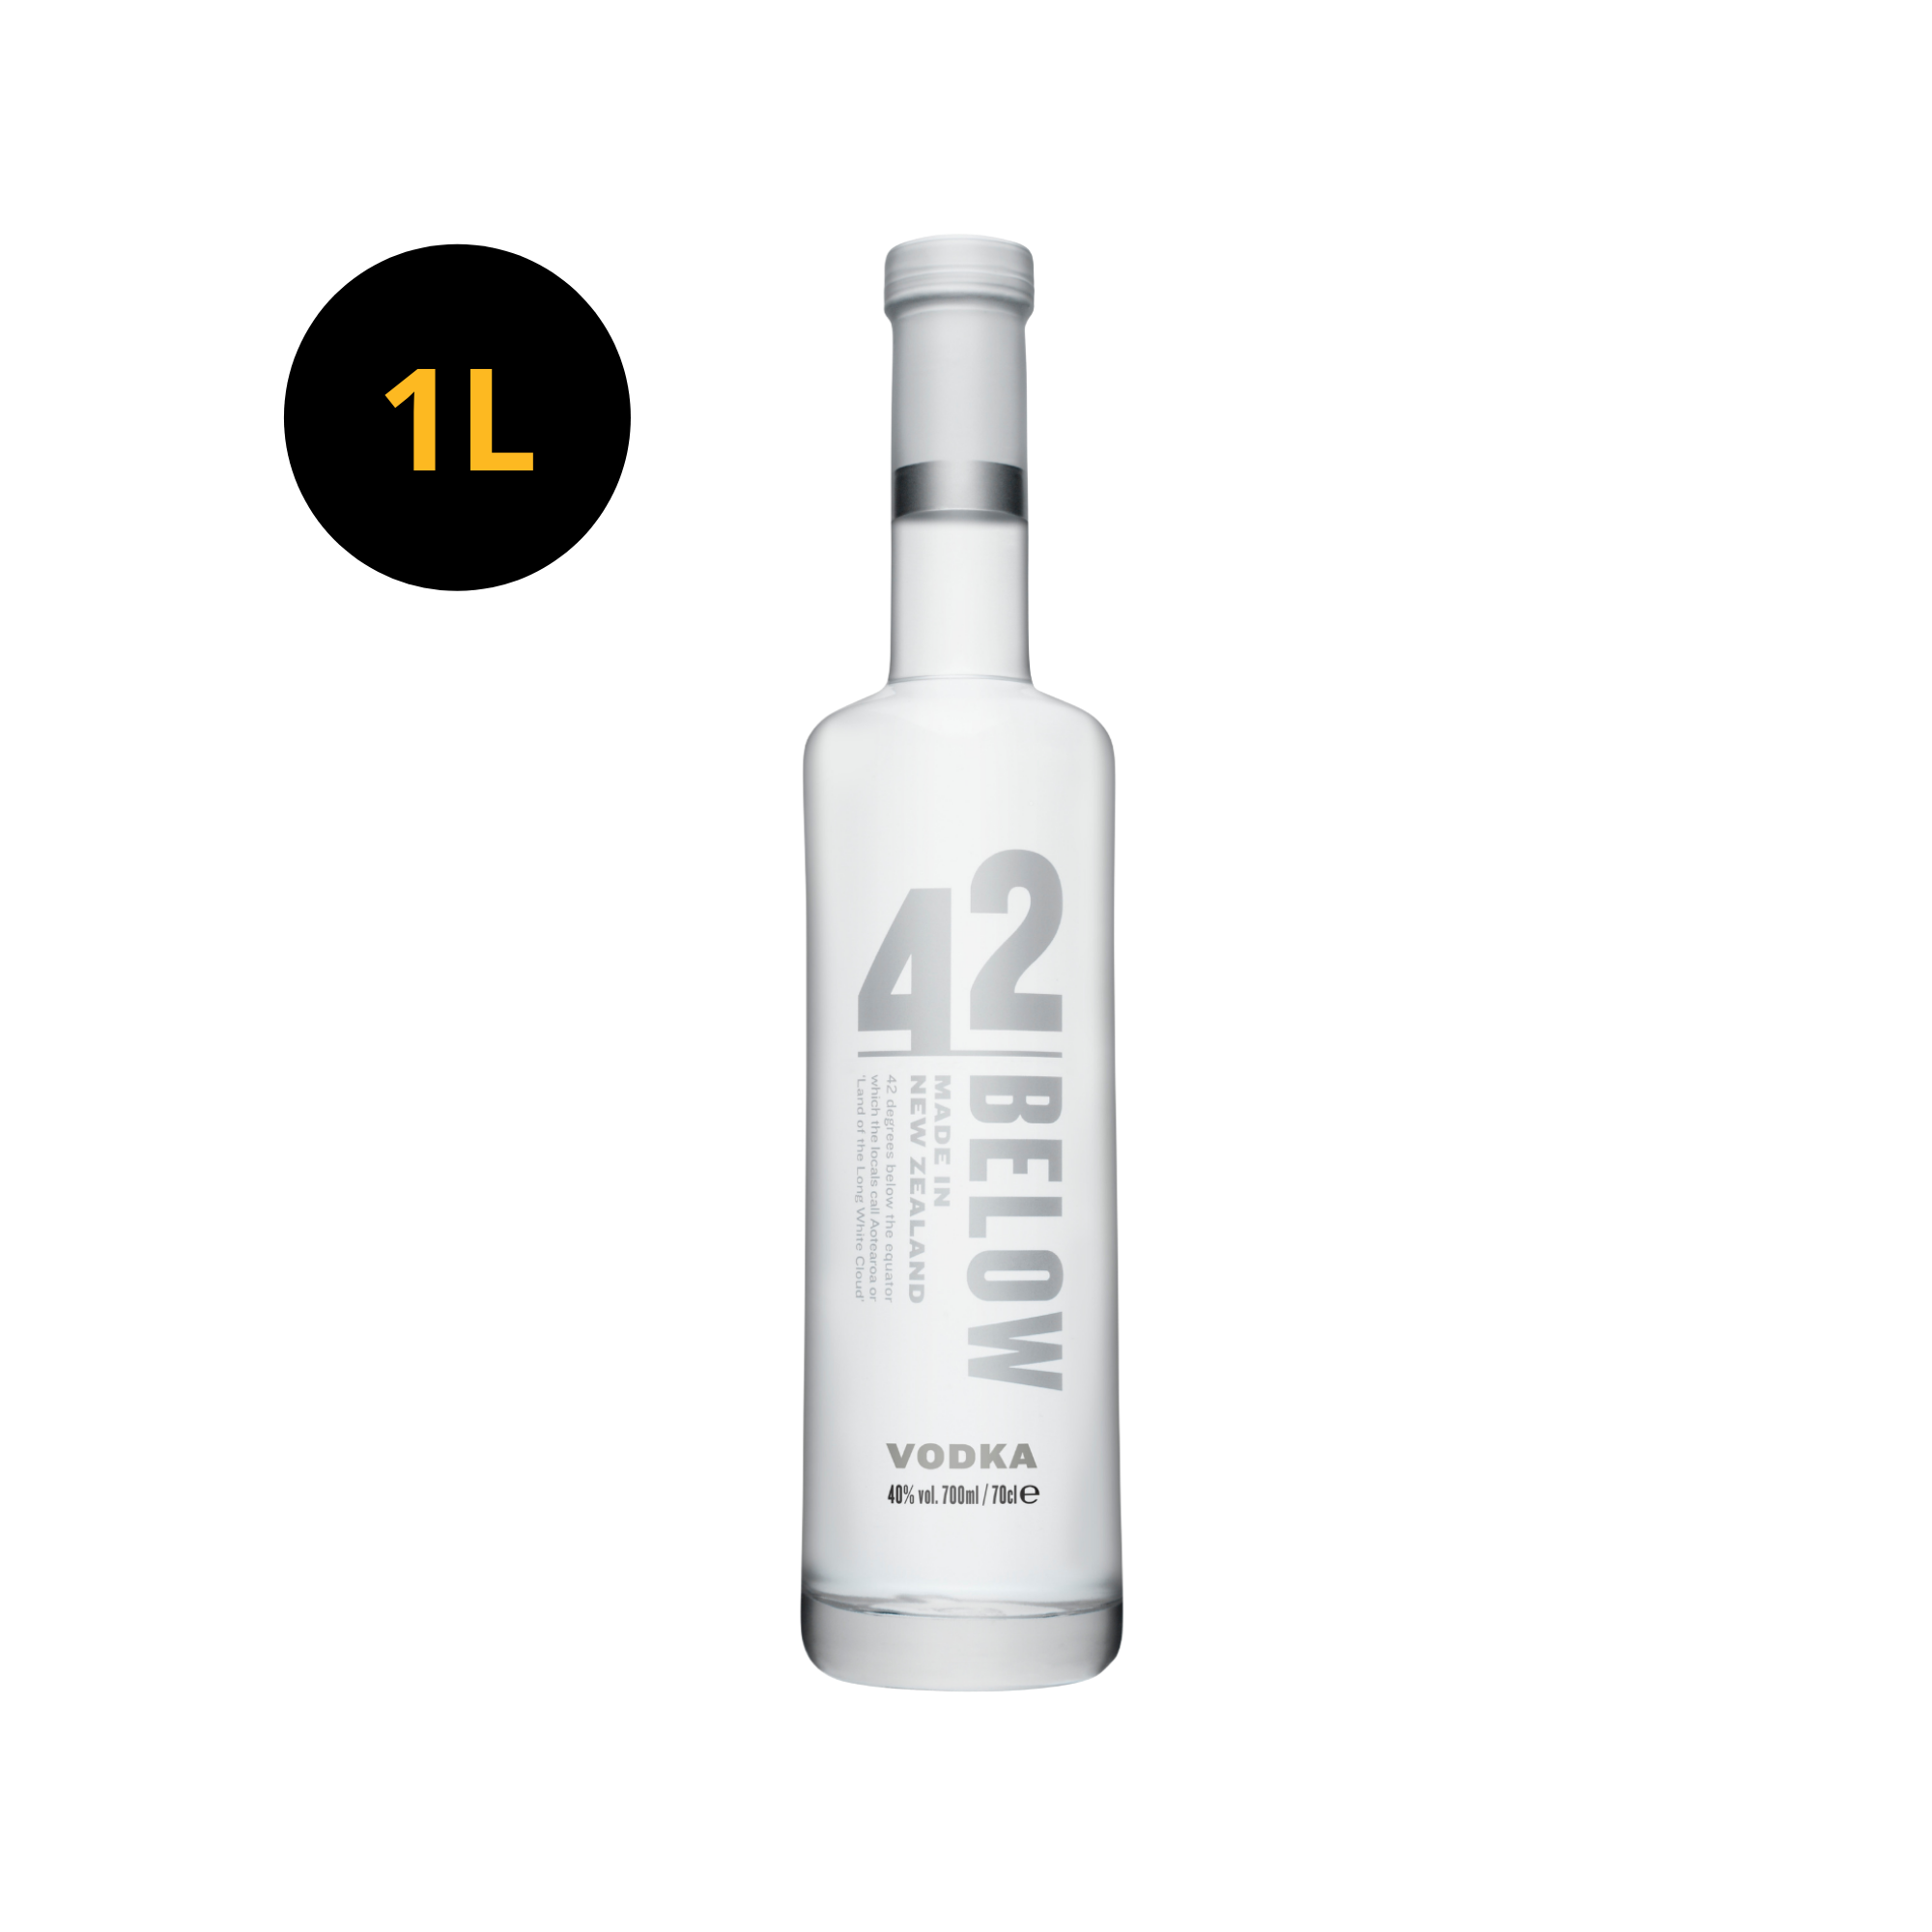 42 Below Pure Vodka 40% 1L